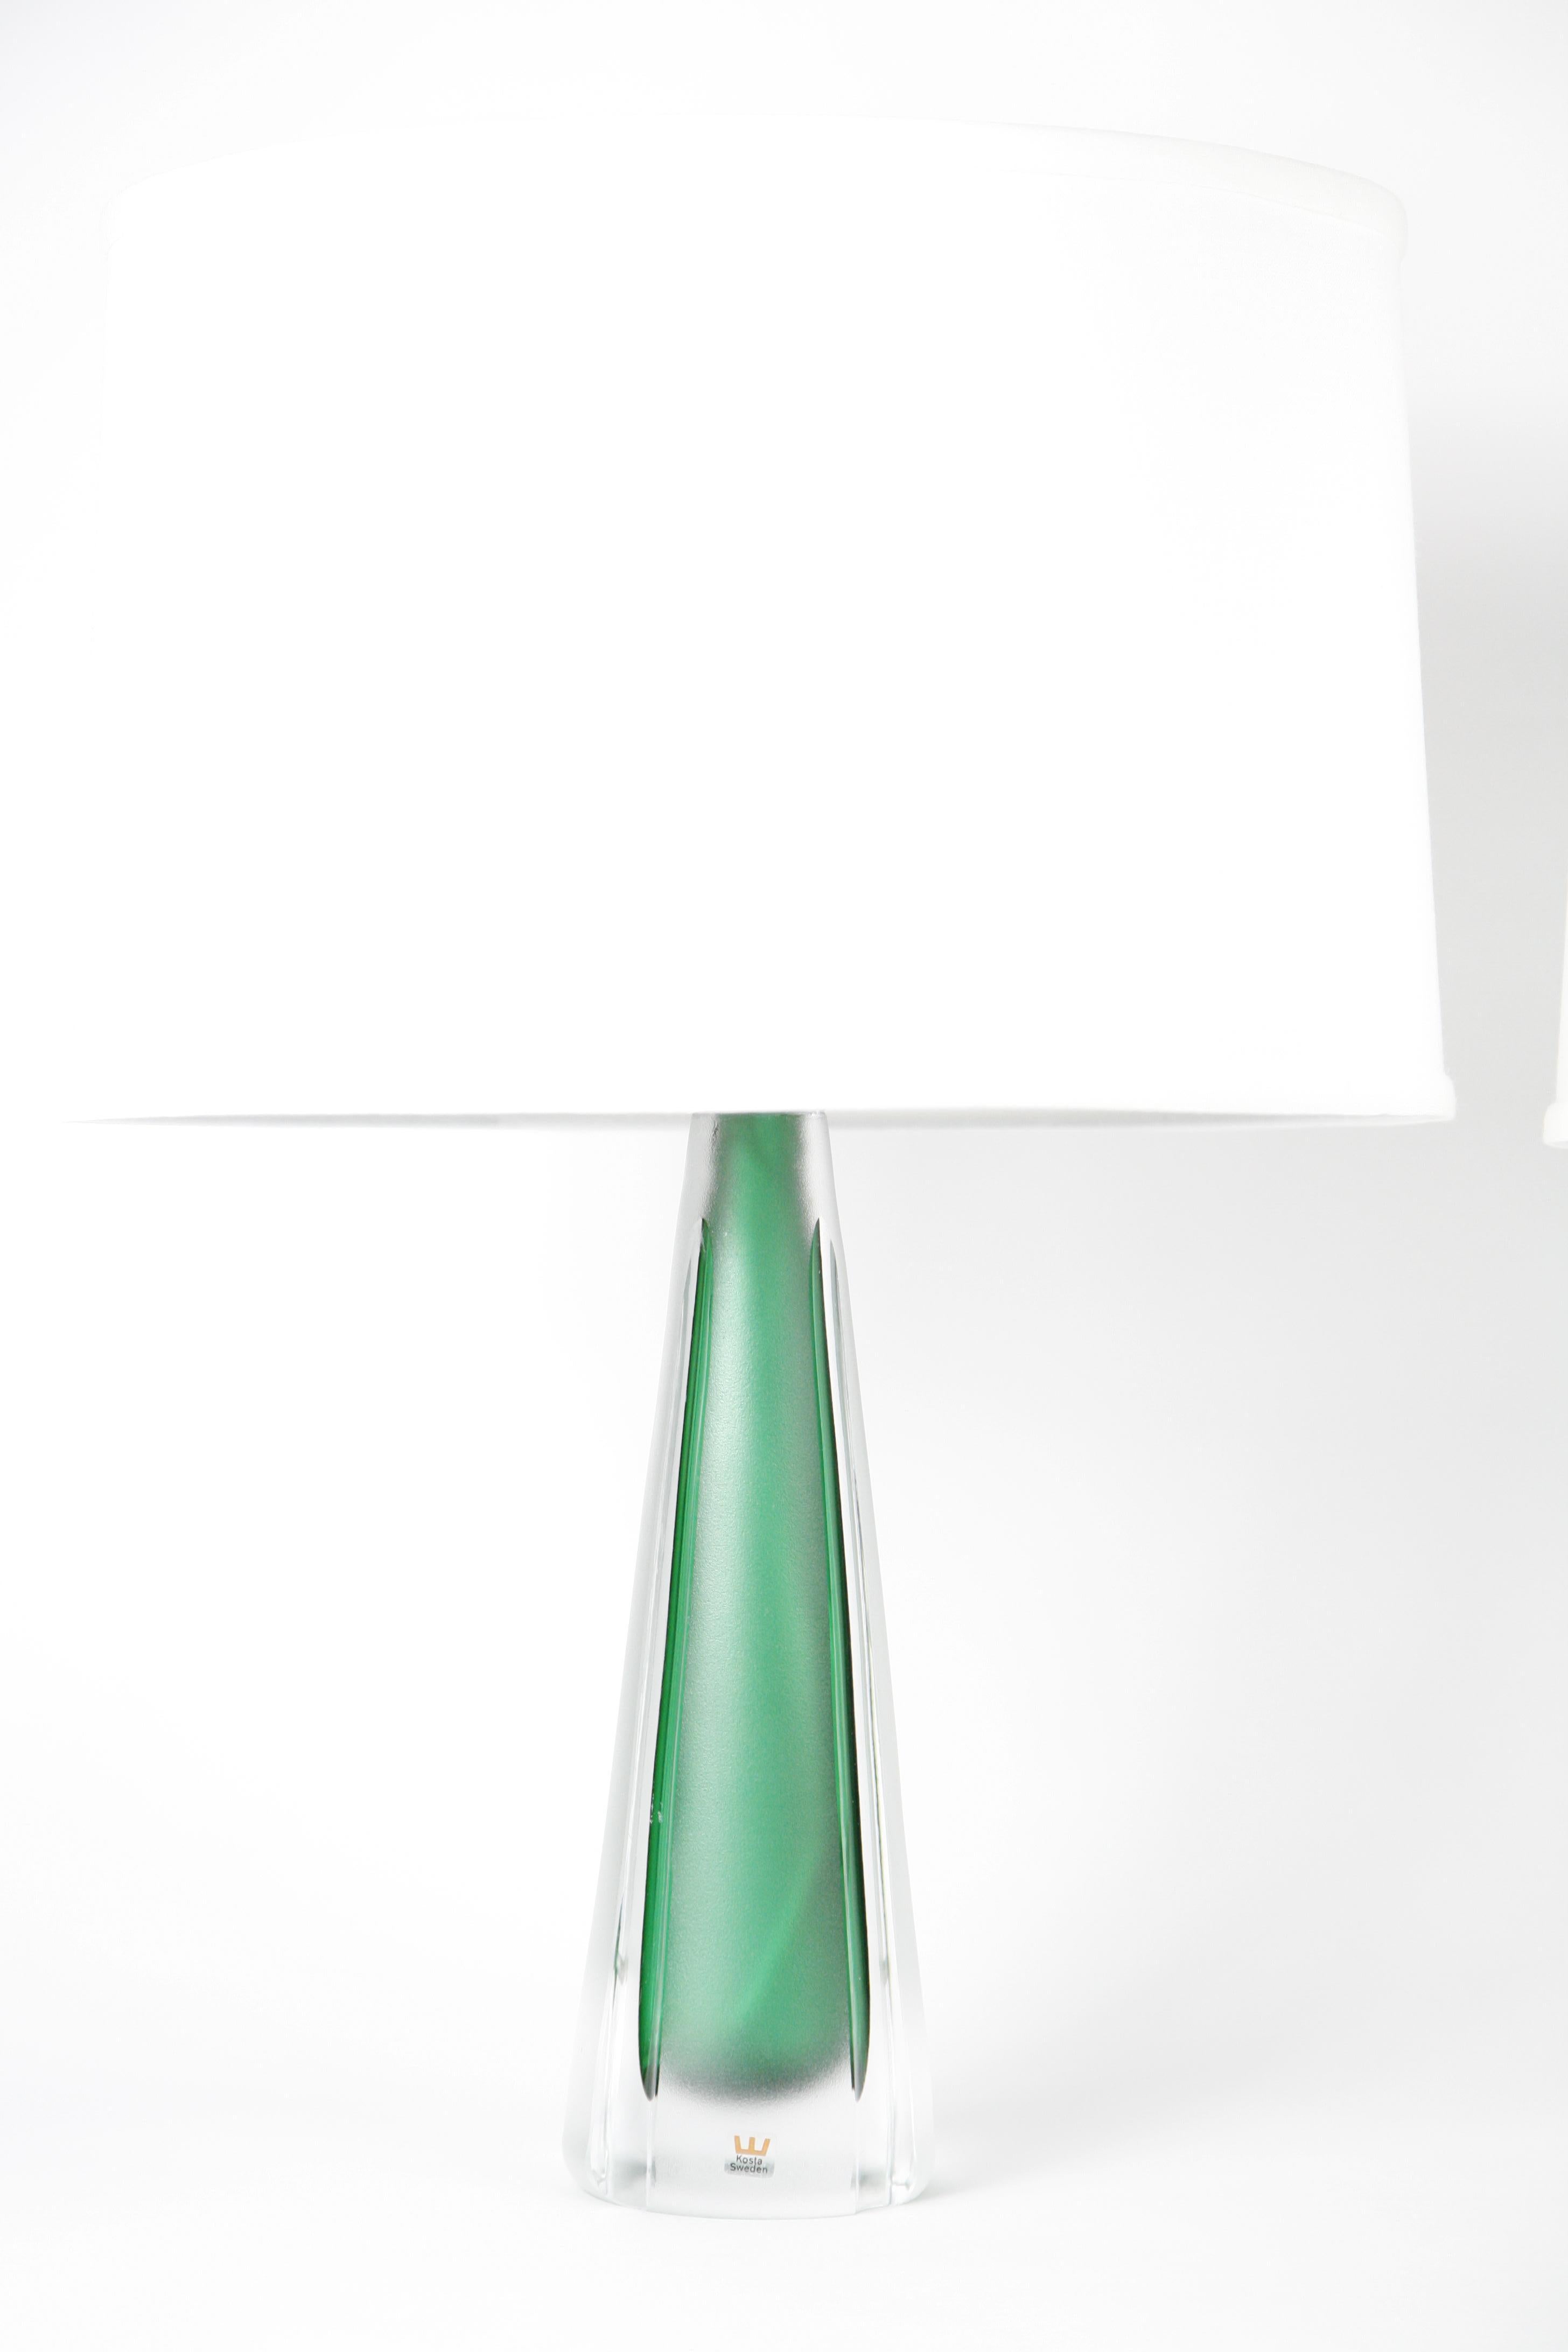 Paire de lampes en verre clair et vert Jade par Kosta, Suède, 1980.
En partie en verre vert dépoli et en verre clair et lisse, ces objets sont extrêmement beaux. La base est très lourde car elle est entièrement en verre, seul le noyau intérieur est